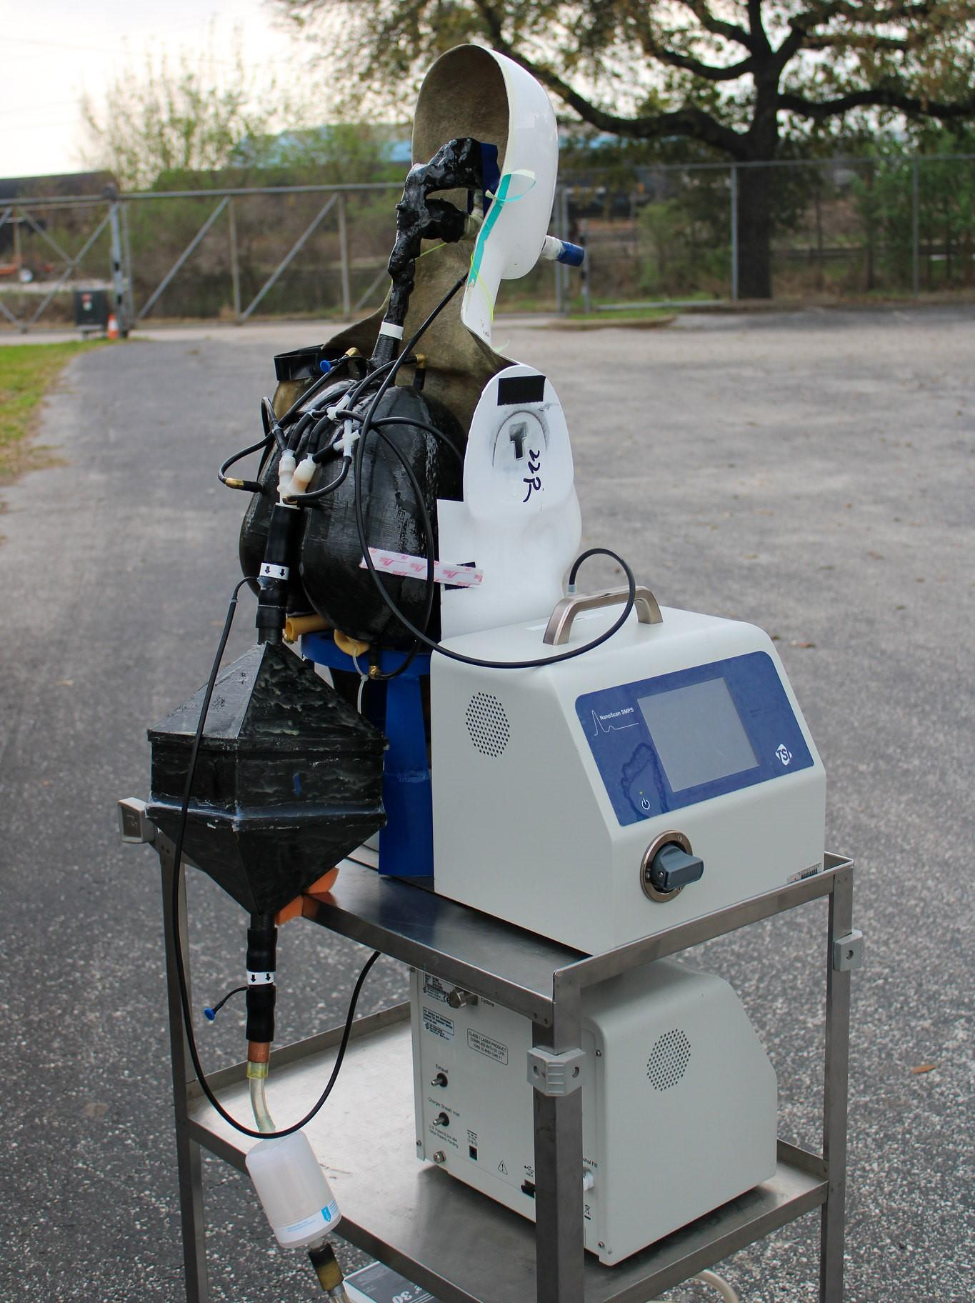 放在手推车和由电池供电,MALDA完全移动并准备测量气溶胶存在于社区或工作场所空气中。(图片由UTHealth休斯顿)